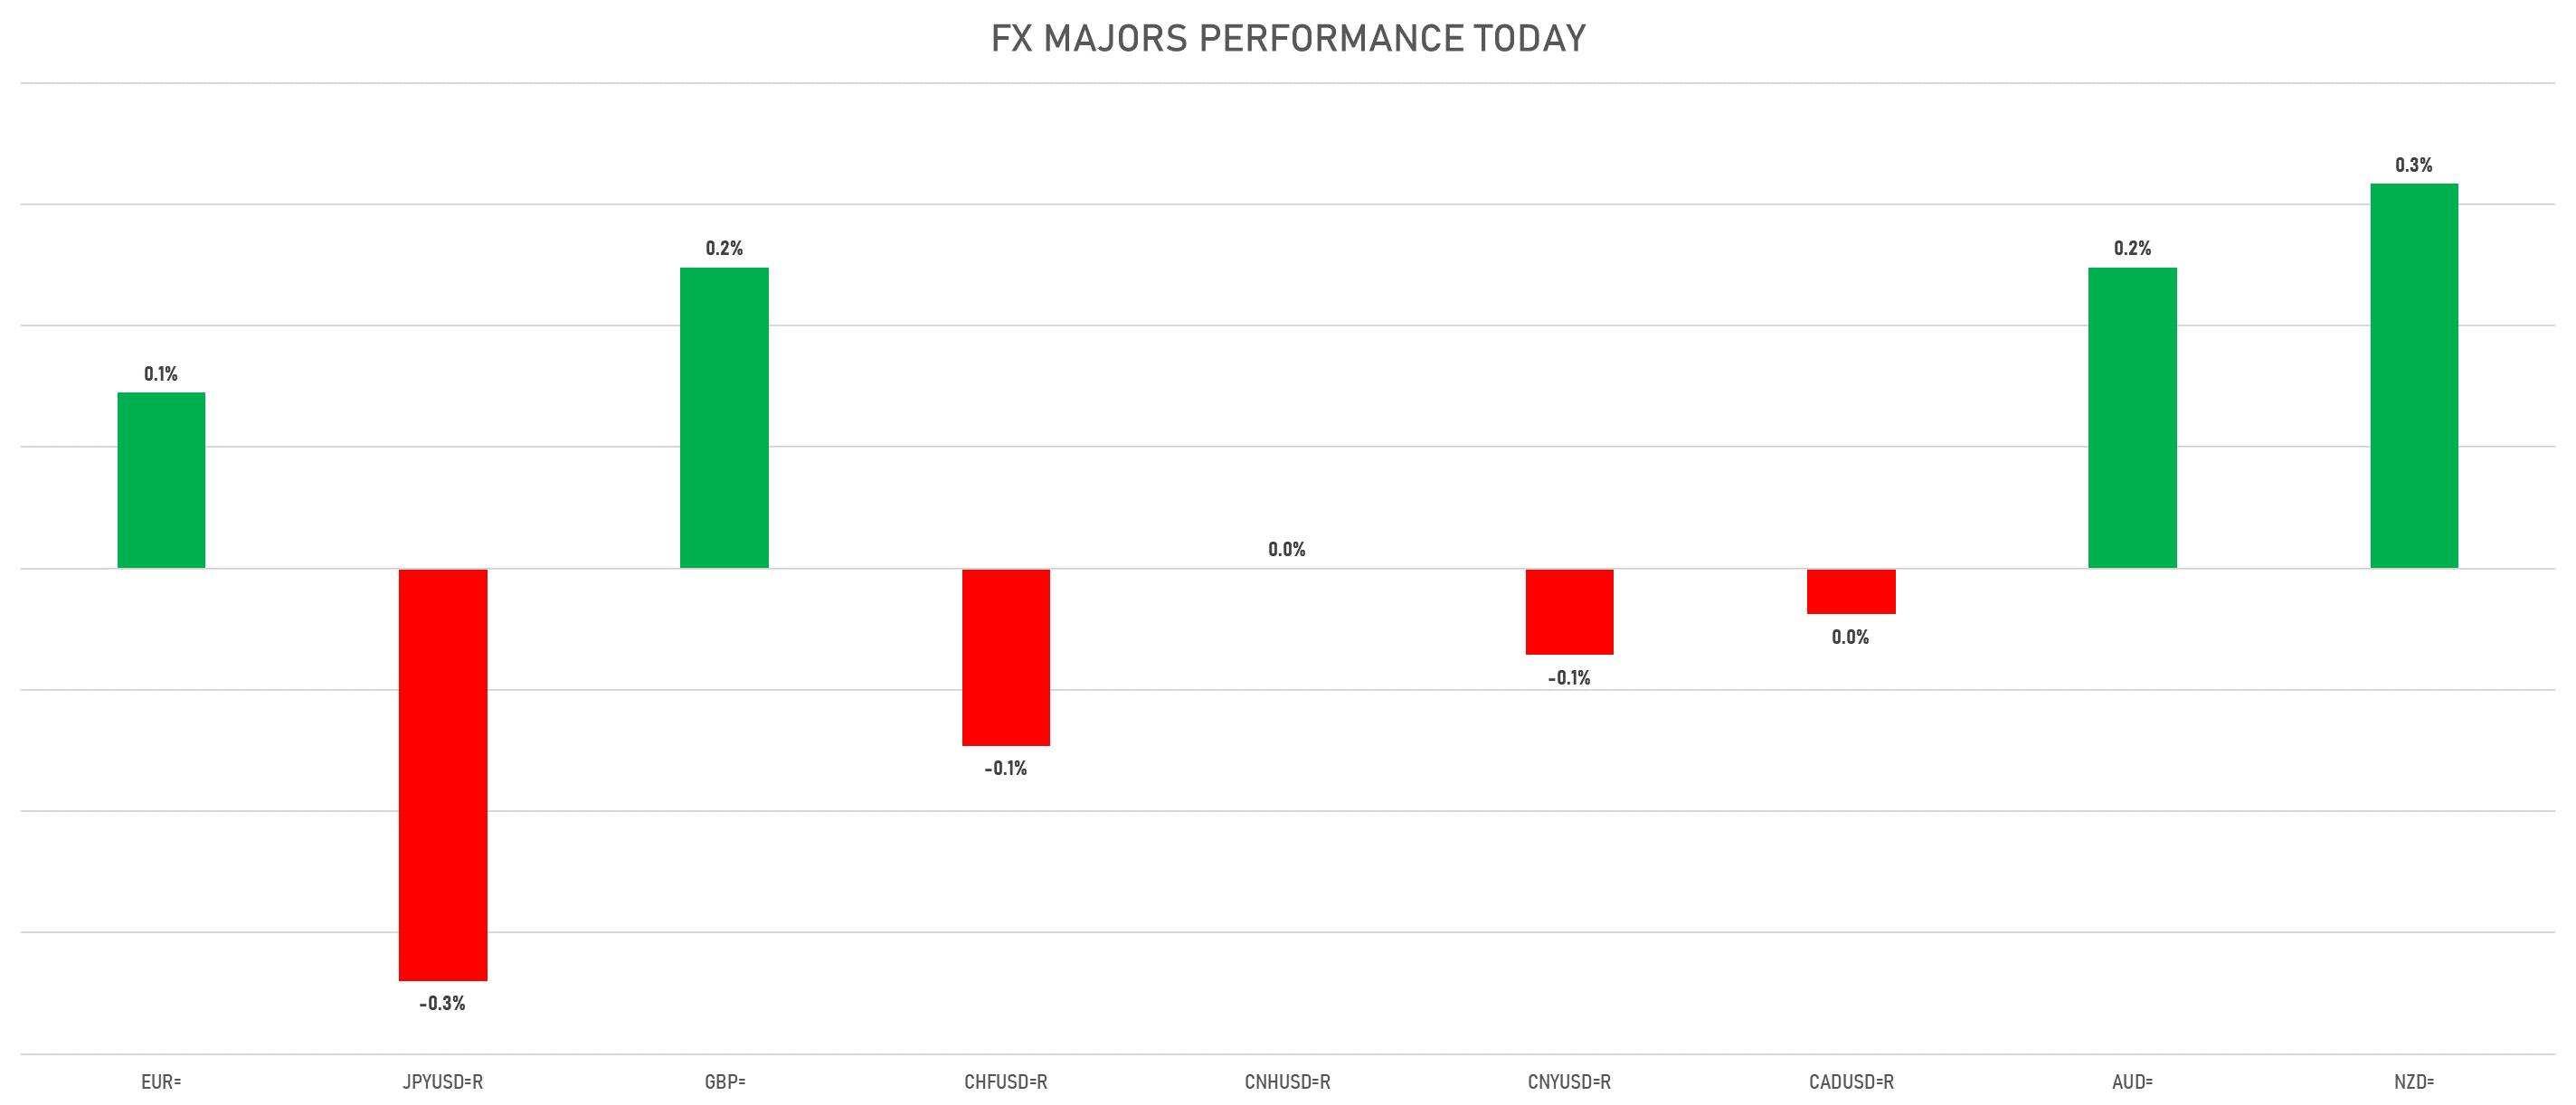 FX Majors Today | Sources: phipost.com, Refinitiv data